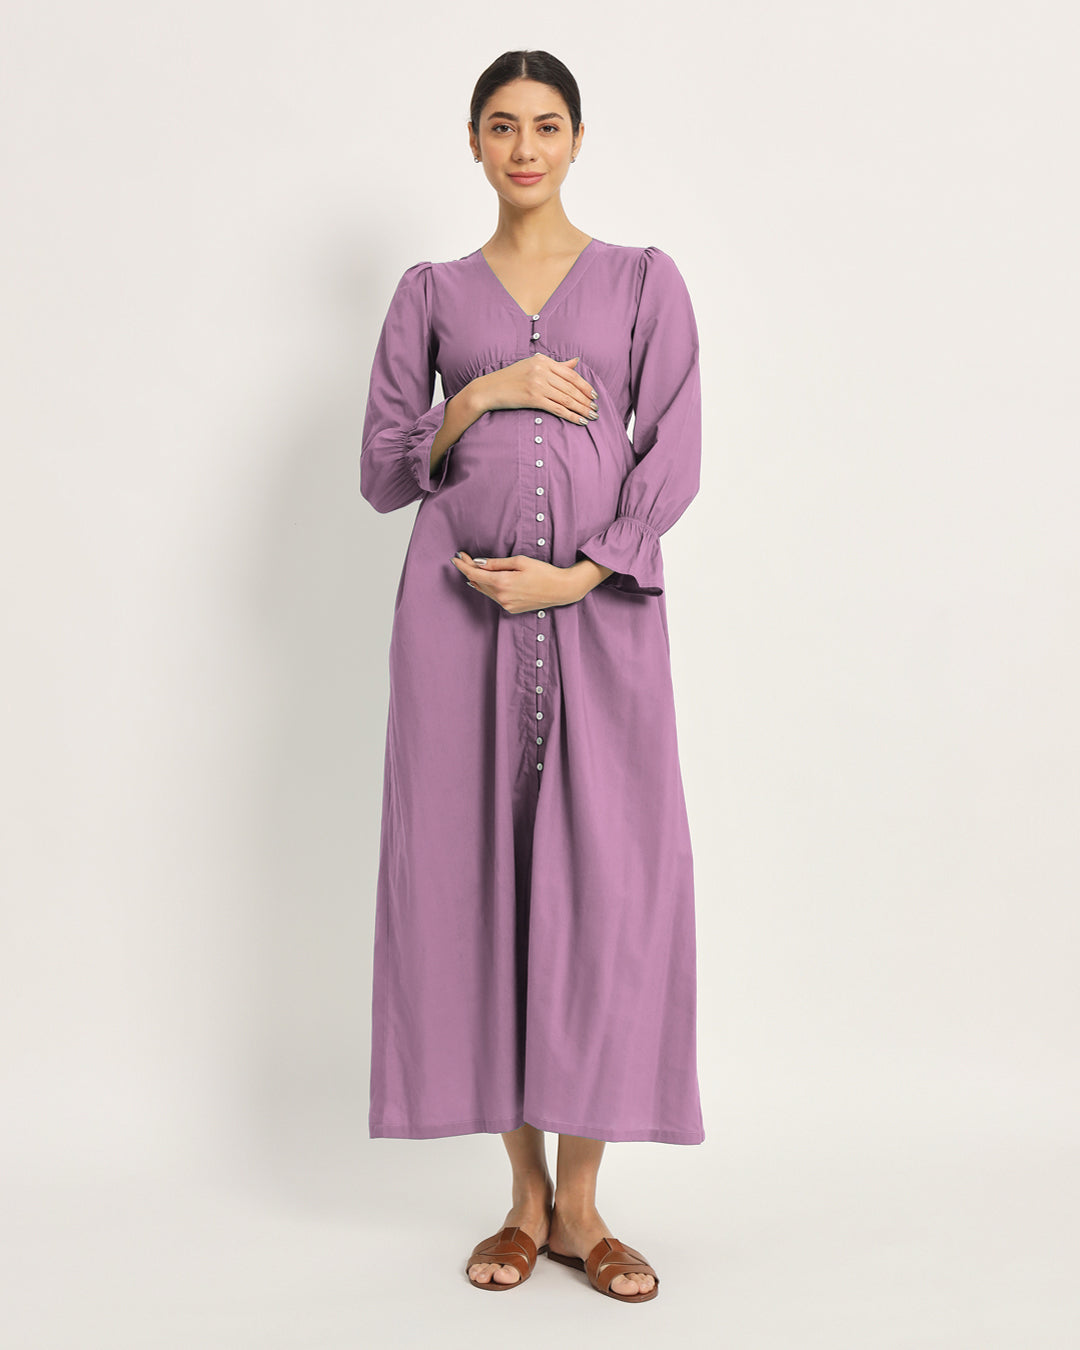 Iris Pink Glowing Bellies Maternity & Nursing Dress